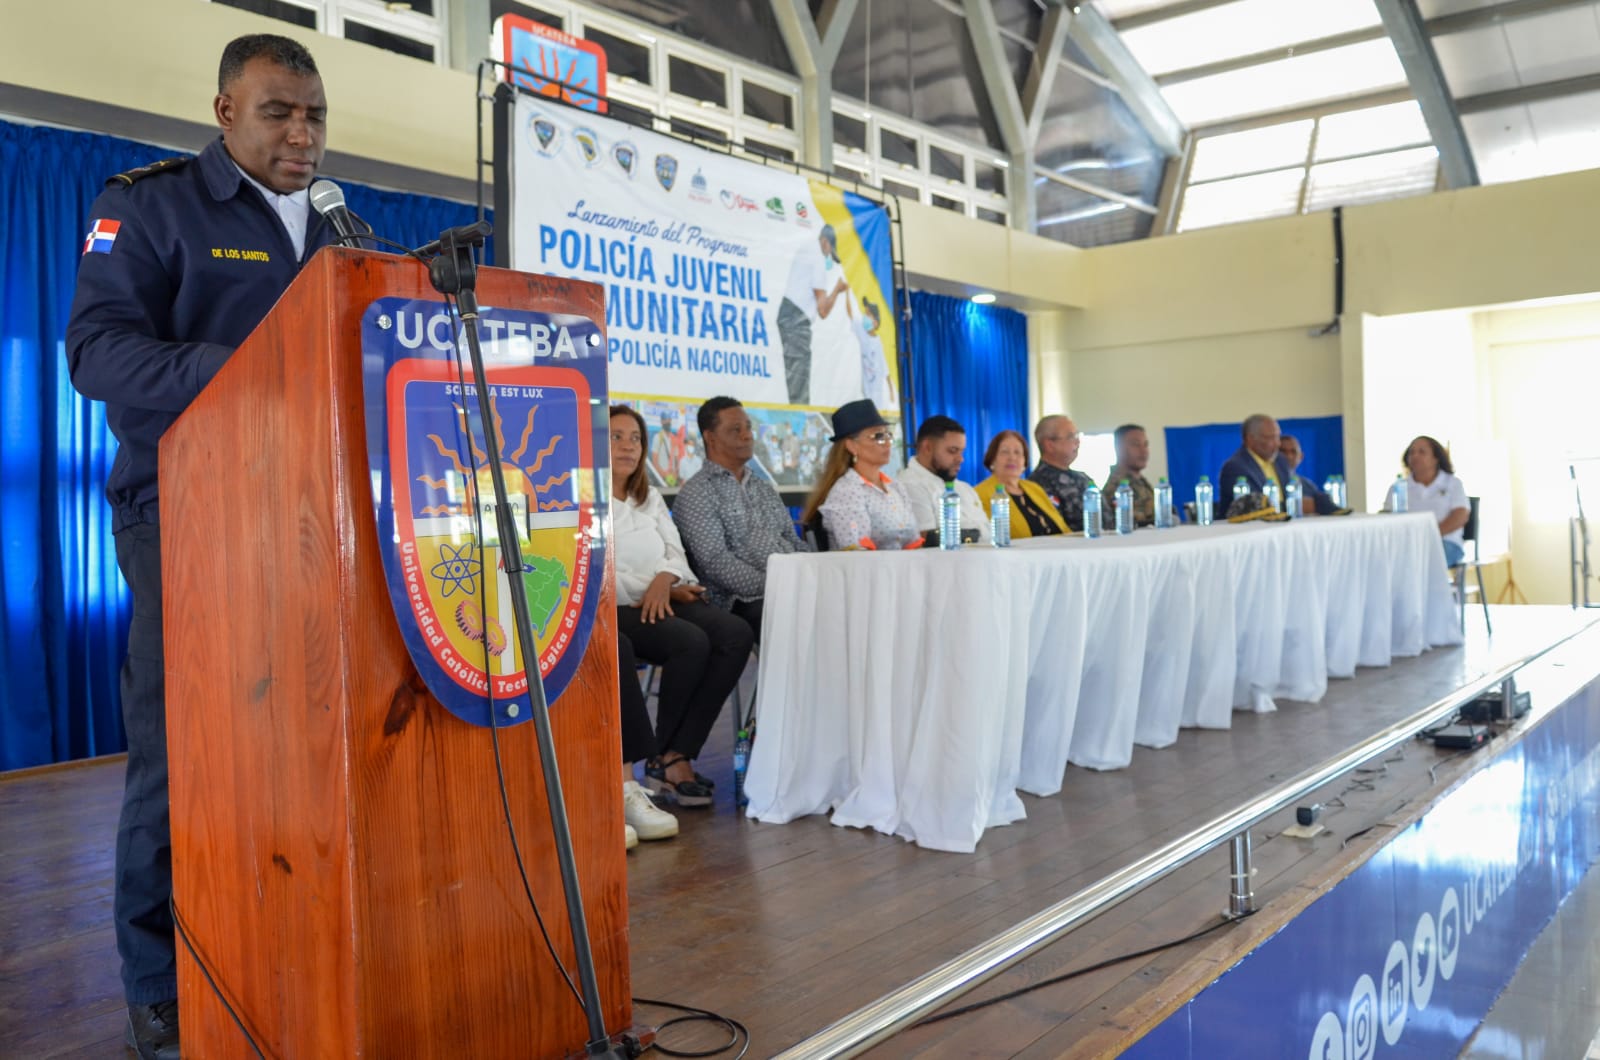 Programa " Policía Juvenil Comunitaria" llega a la Provincia Barahona.